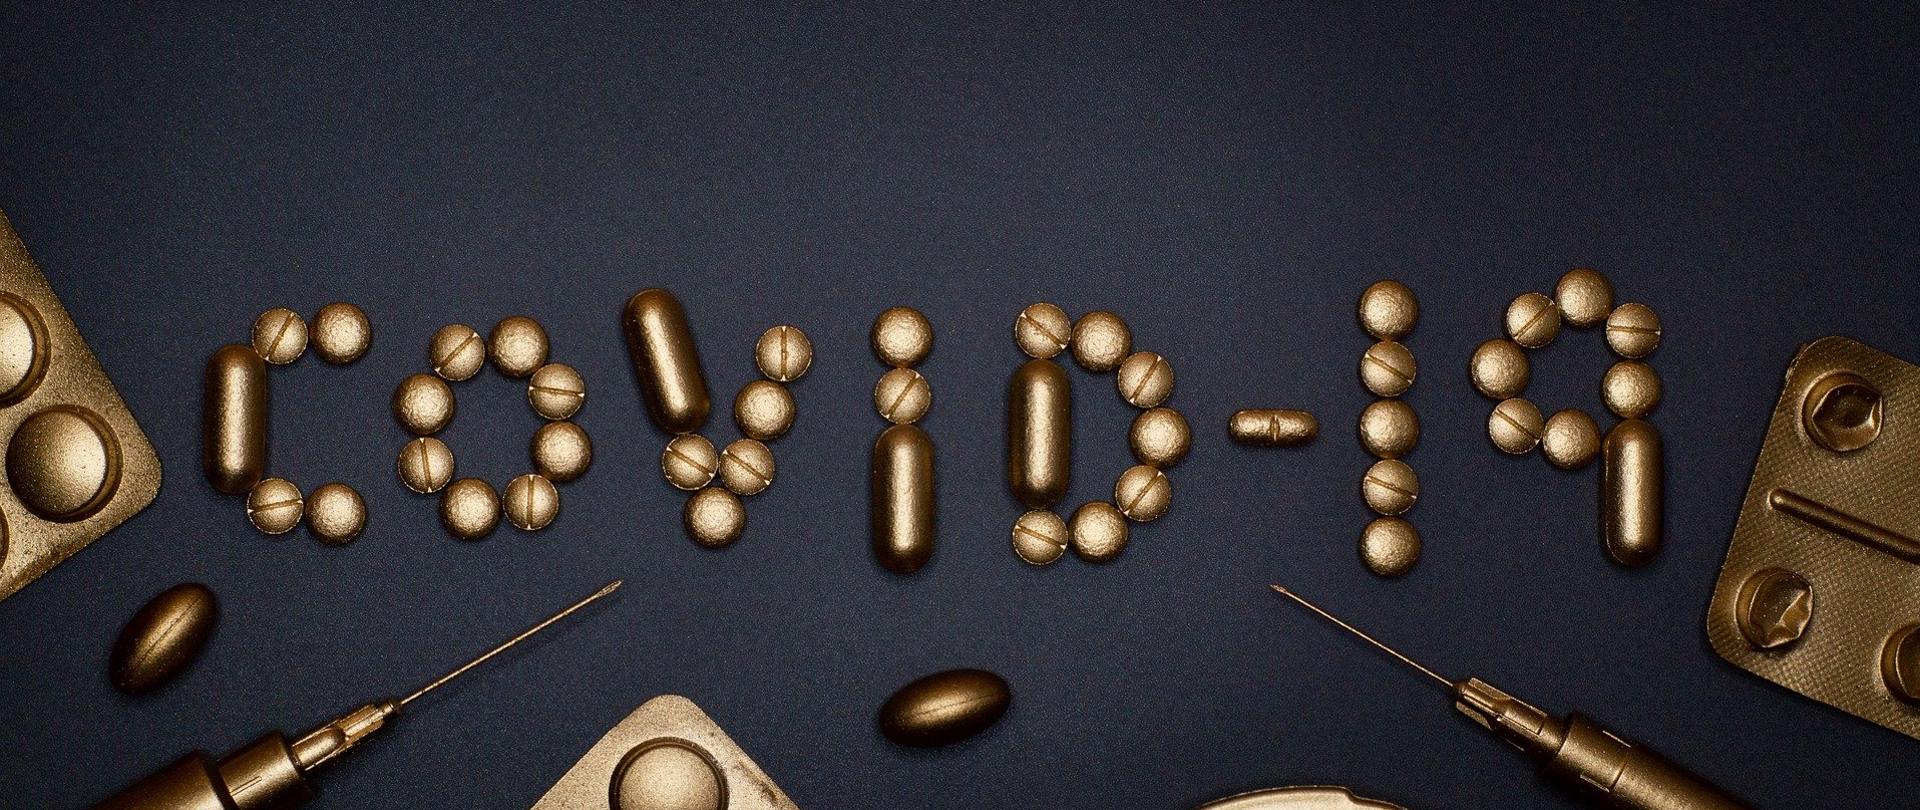 złote tabletki na czarnym tle ułożone w napis COVID-19.